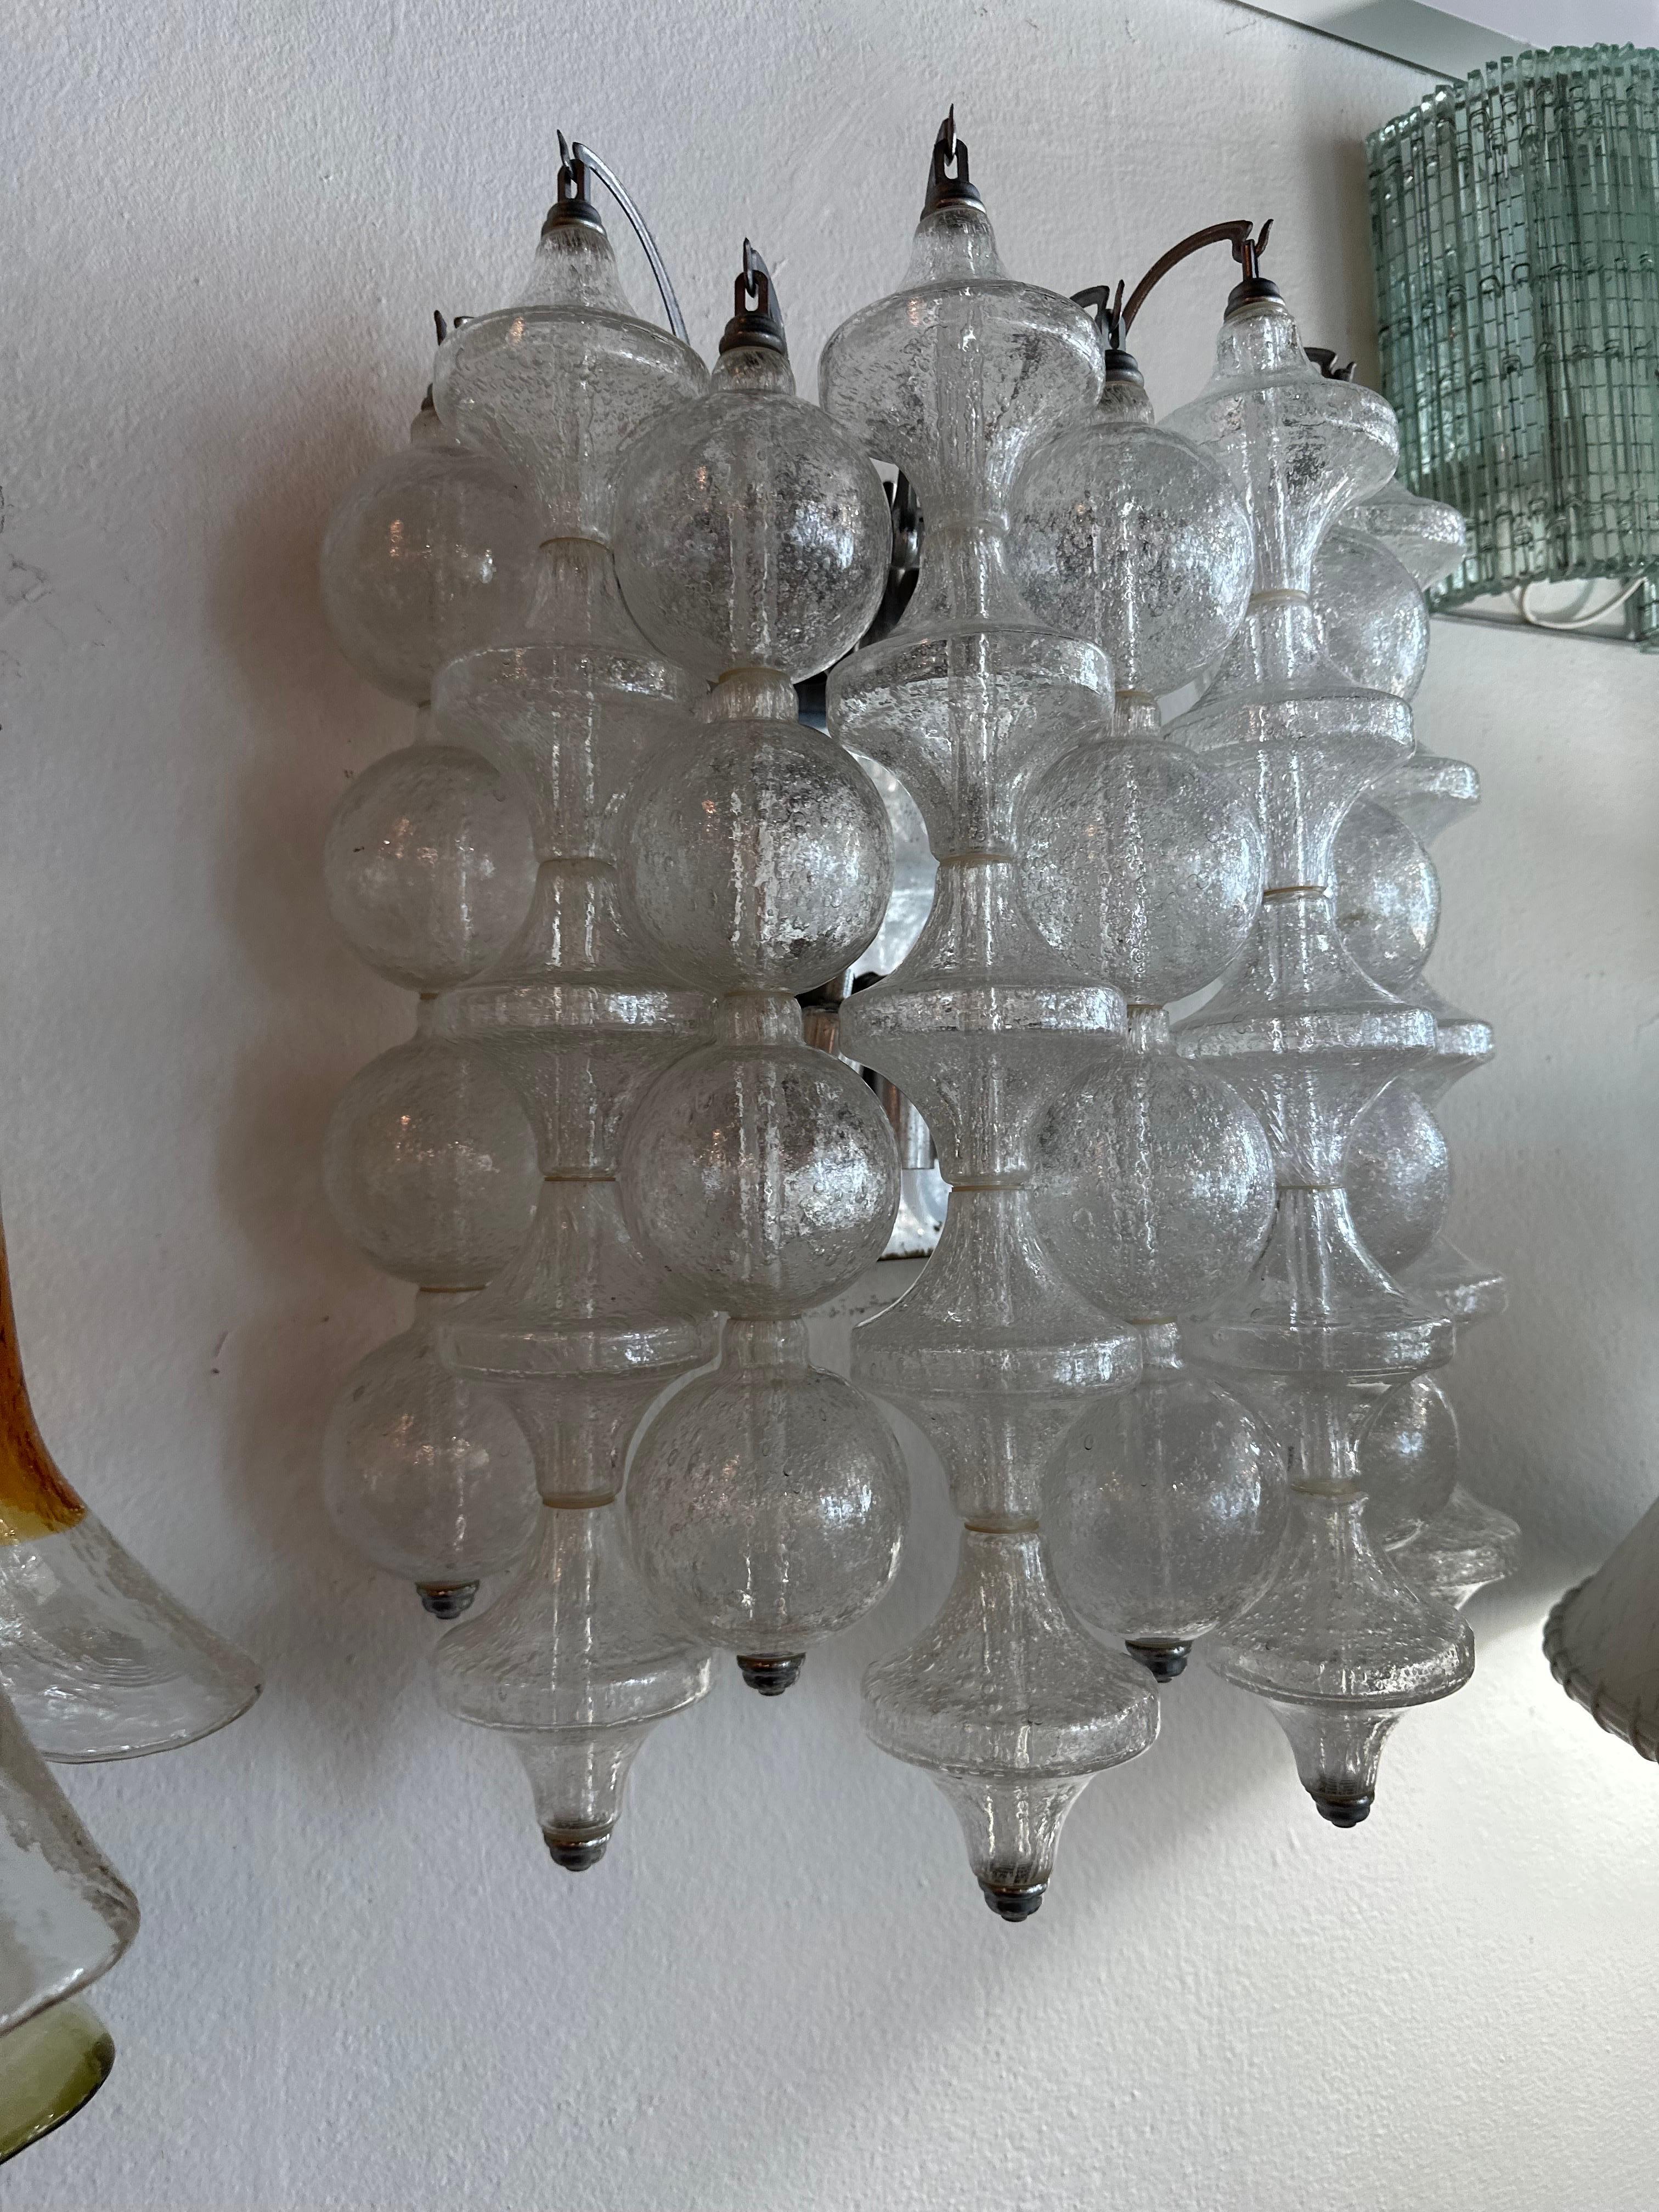 Schöne Vintage Wandleuchte von J. T. Kalmar Tulipan, Diese hat 9 Reihen von Glocken und Blasen. Fasst 8 Glühbirnen. Keine Chips oder Brüche an den Glasstücken. Patina an der Halterung. Abmessungen: 19 H x 16 B x 8 T.